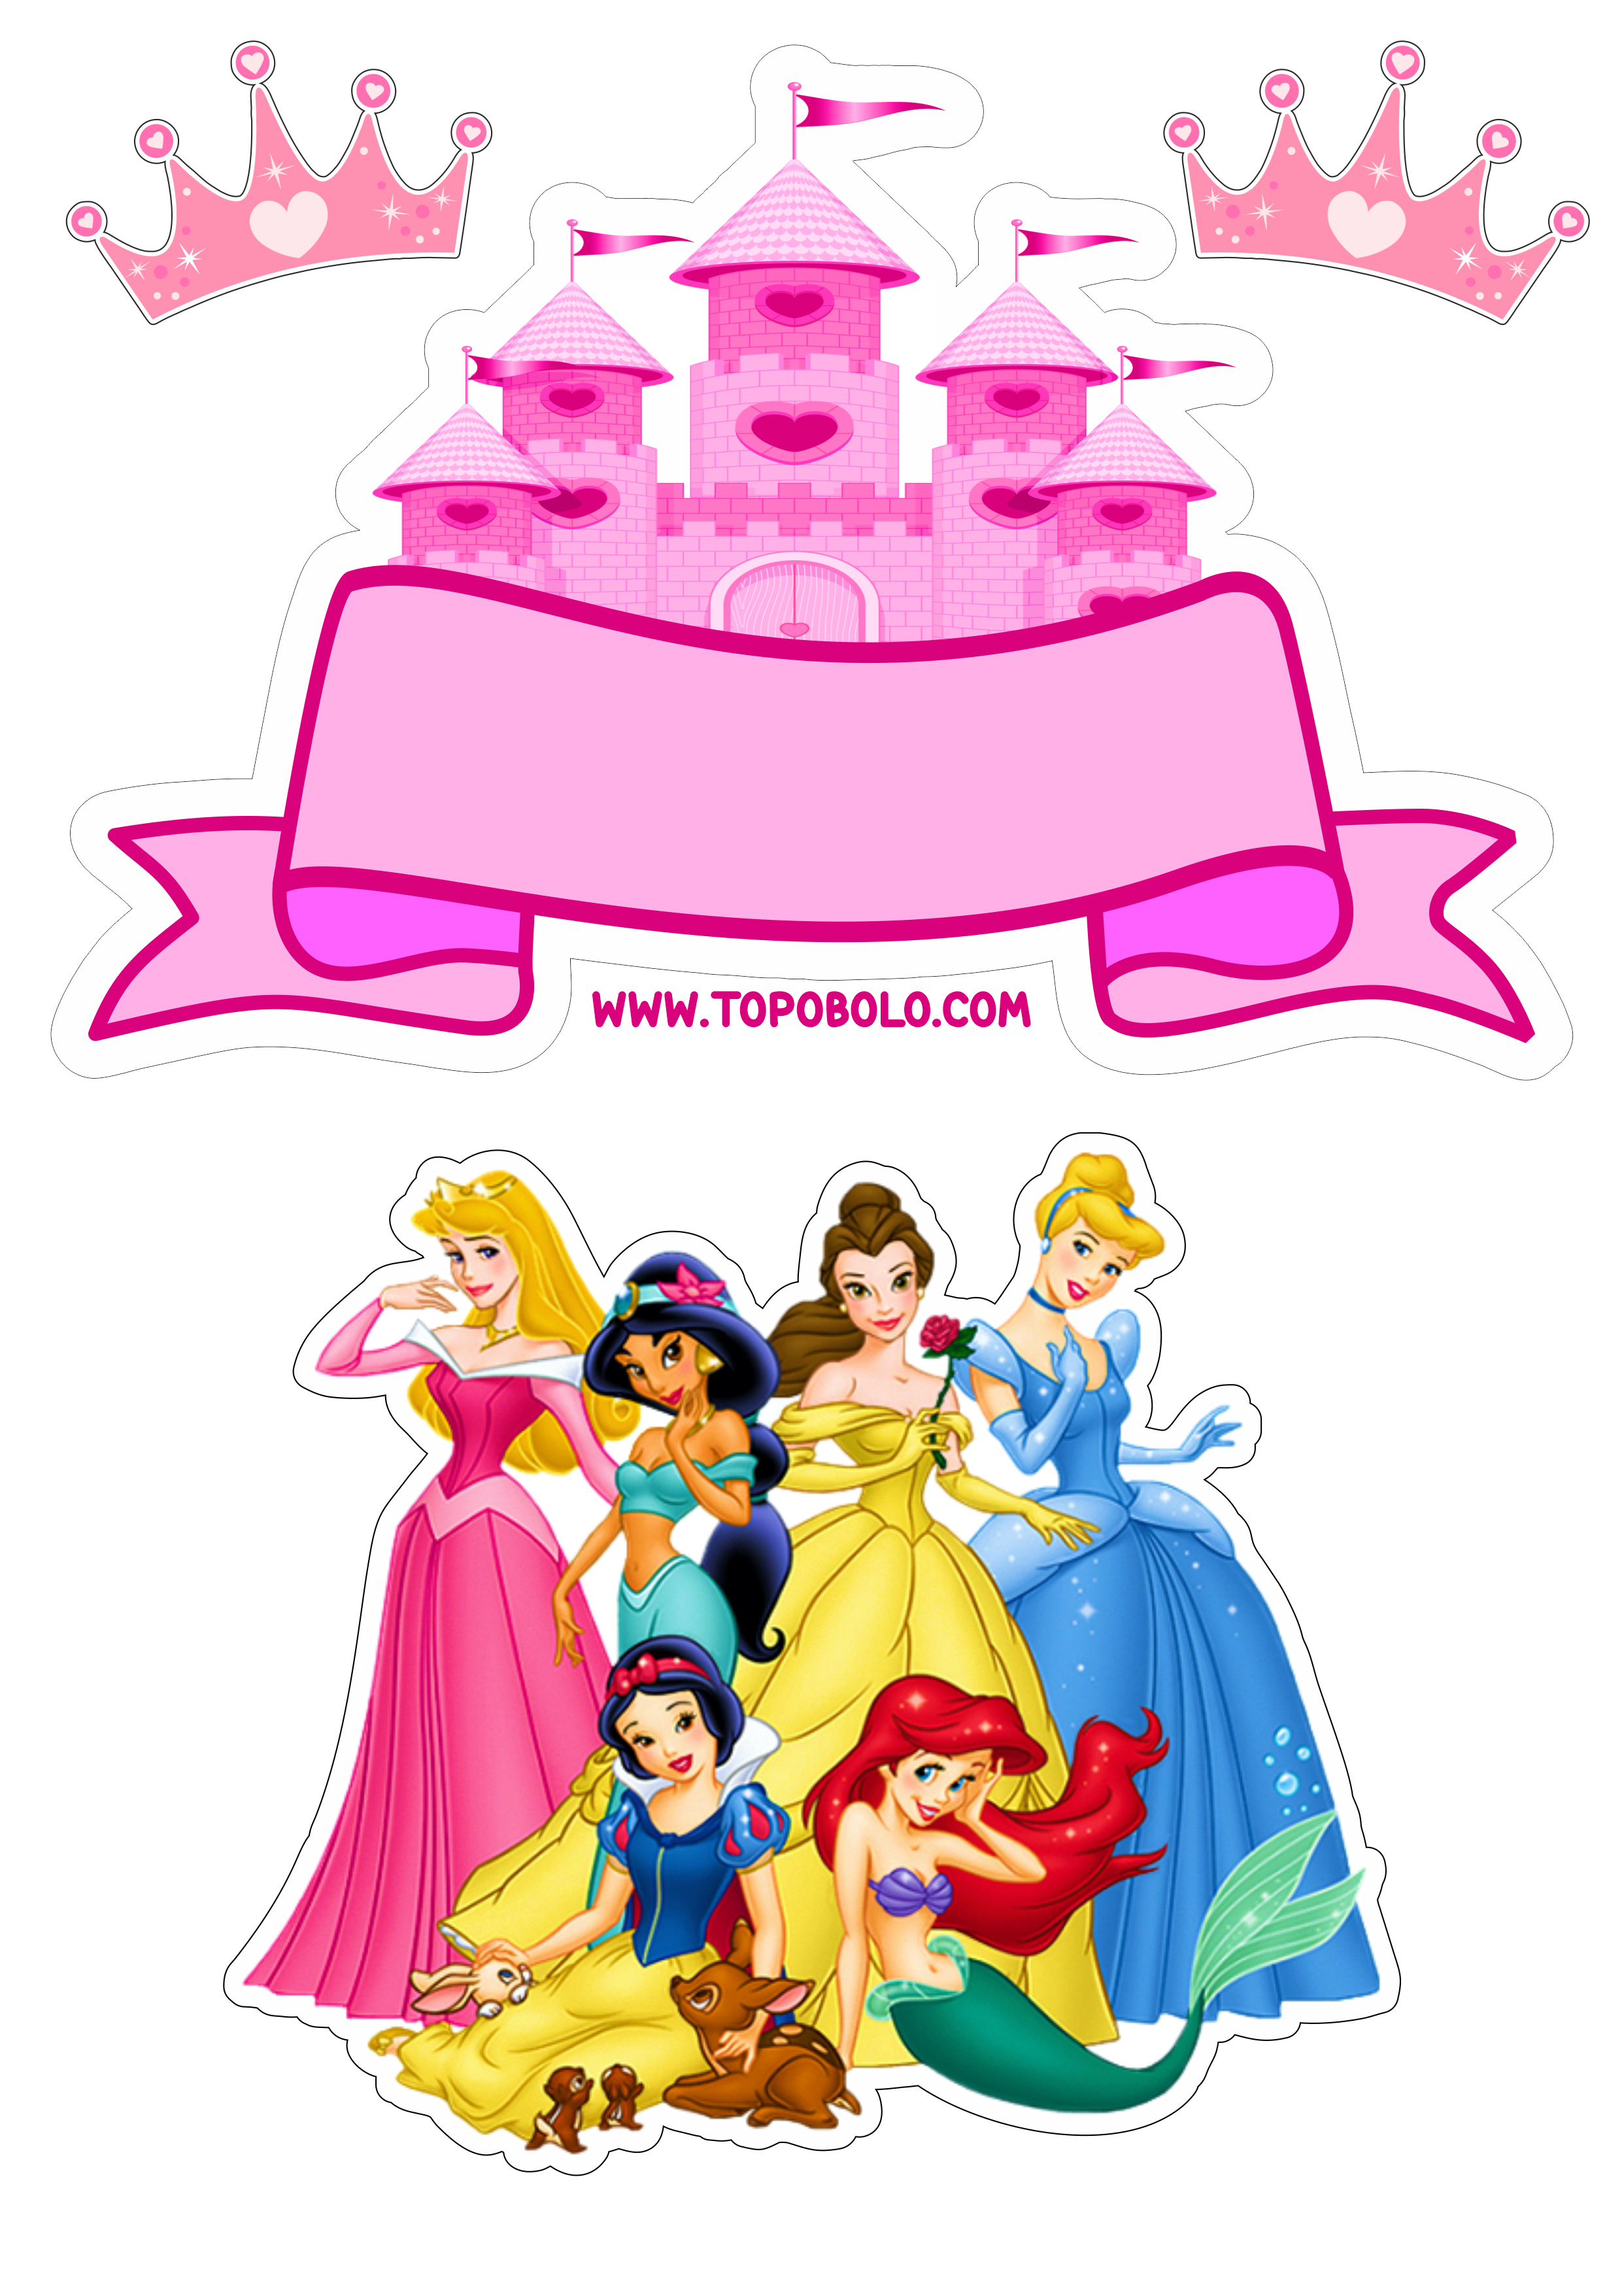 Topo de bolo princesas disney baby decoração de festa infantil pronto para imprimir papelaria criativa coroa artes gráficas png